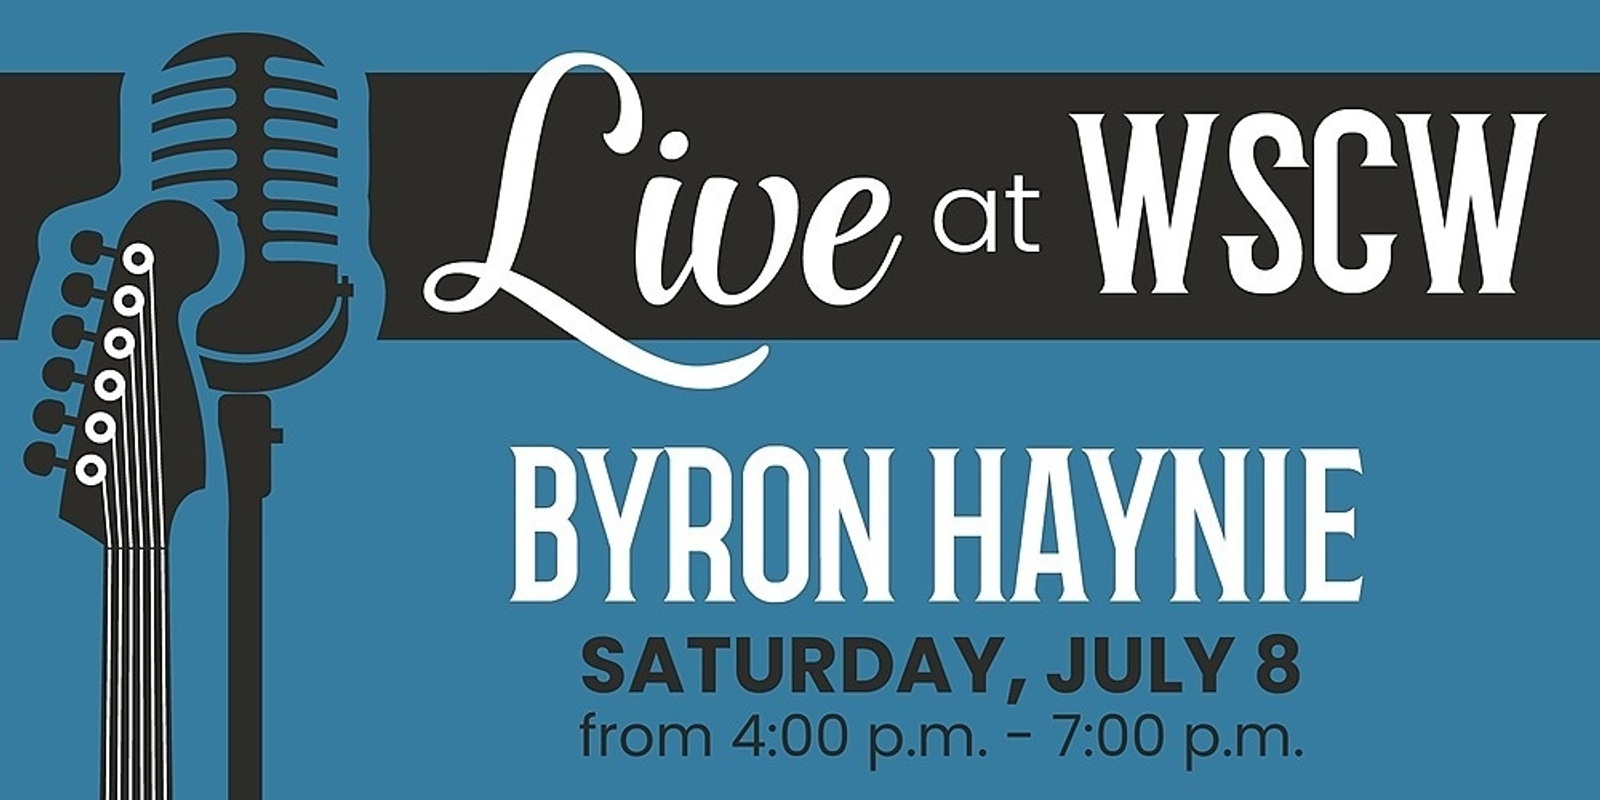 Byron Haynie Live at WSCW July 8